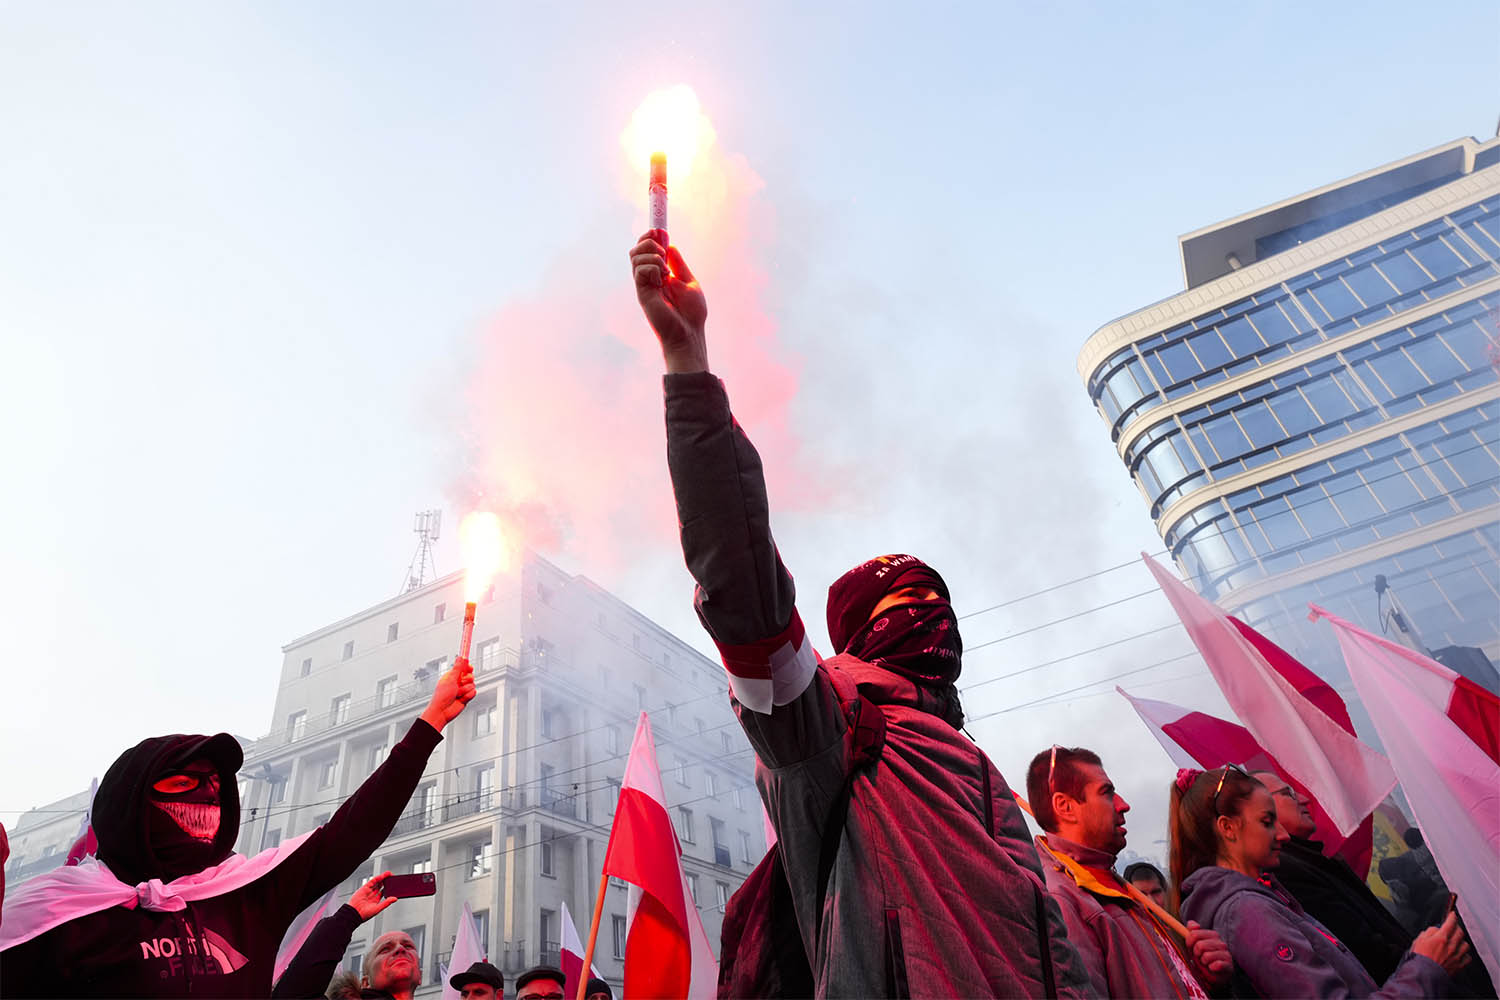 אנשים מפגינים במהלך צעדת יום העצמאות בפולין (צילום: AP/Czarek Sokolowski)